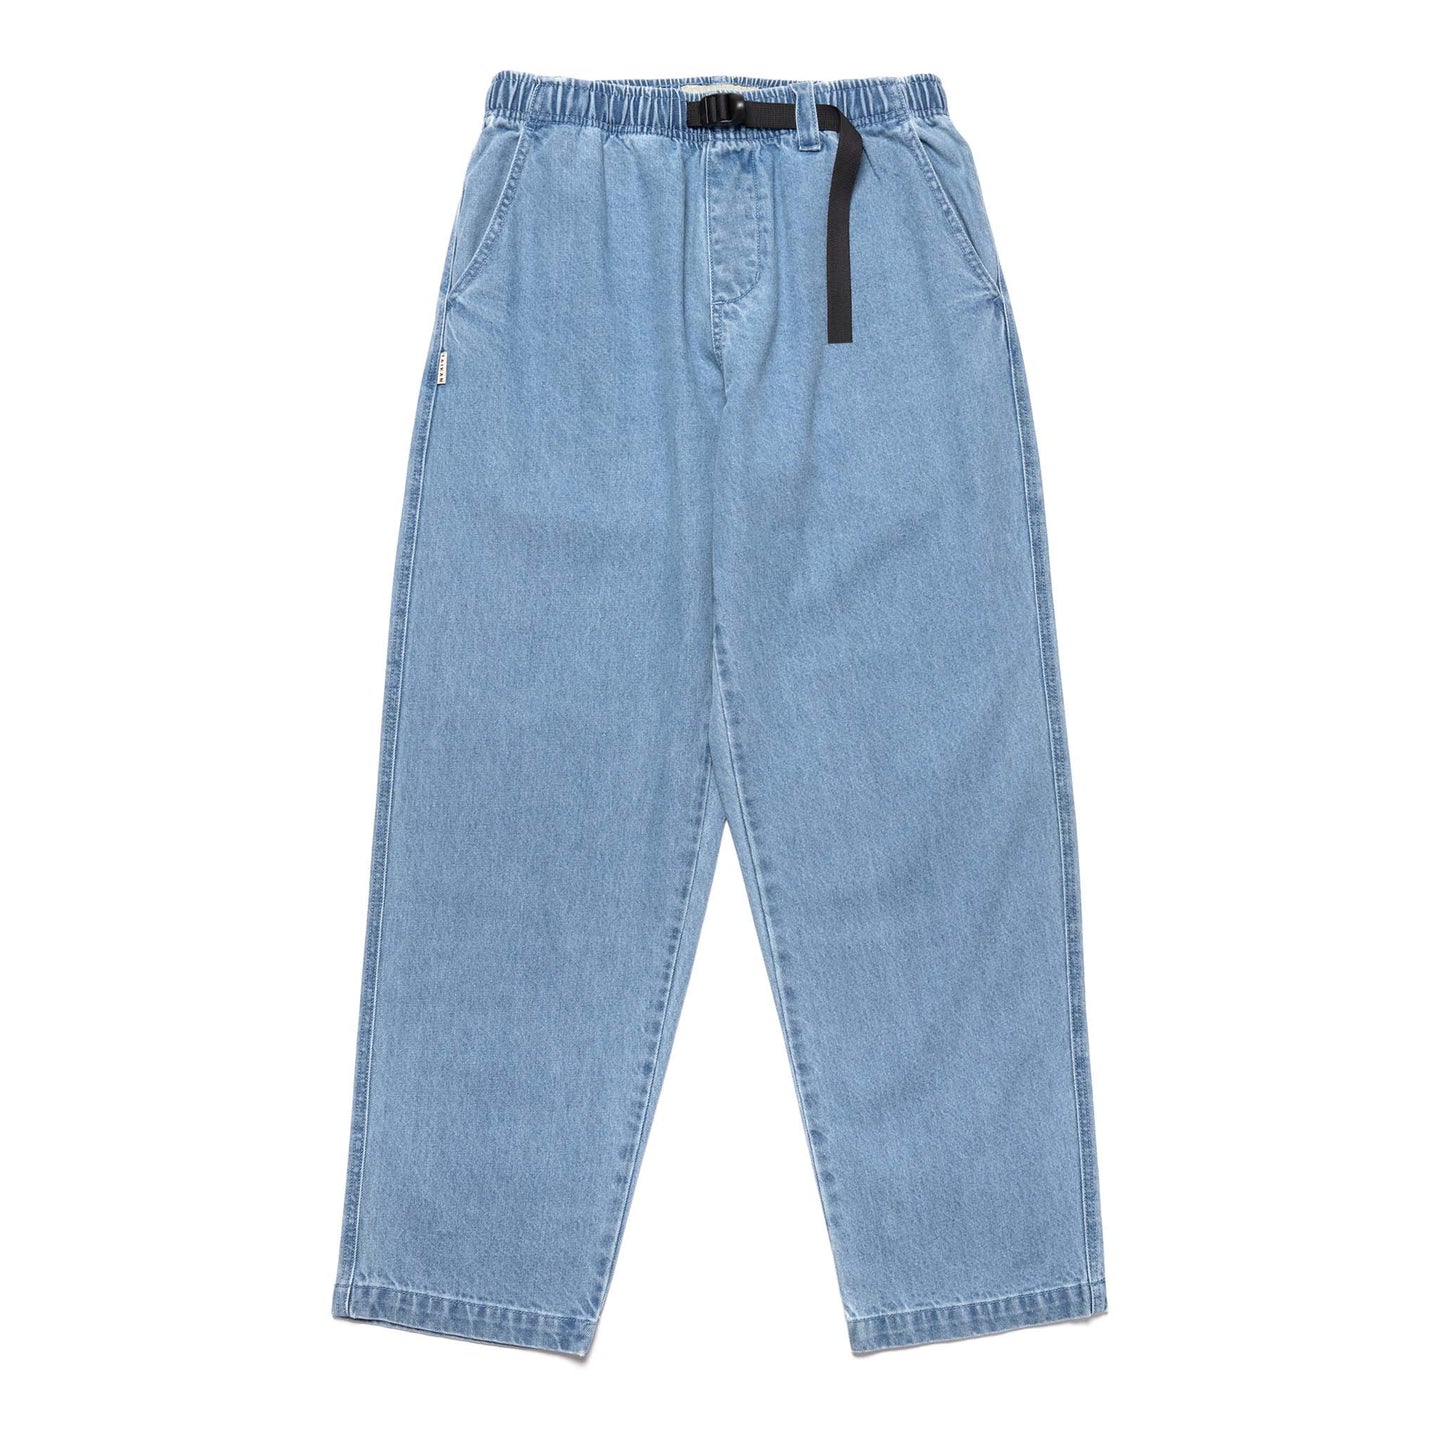 Taikan | Pants for men - Chiller Pant | Stonewash Blue | kapok